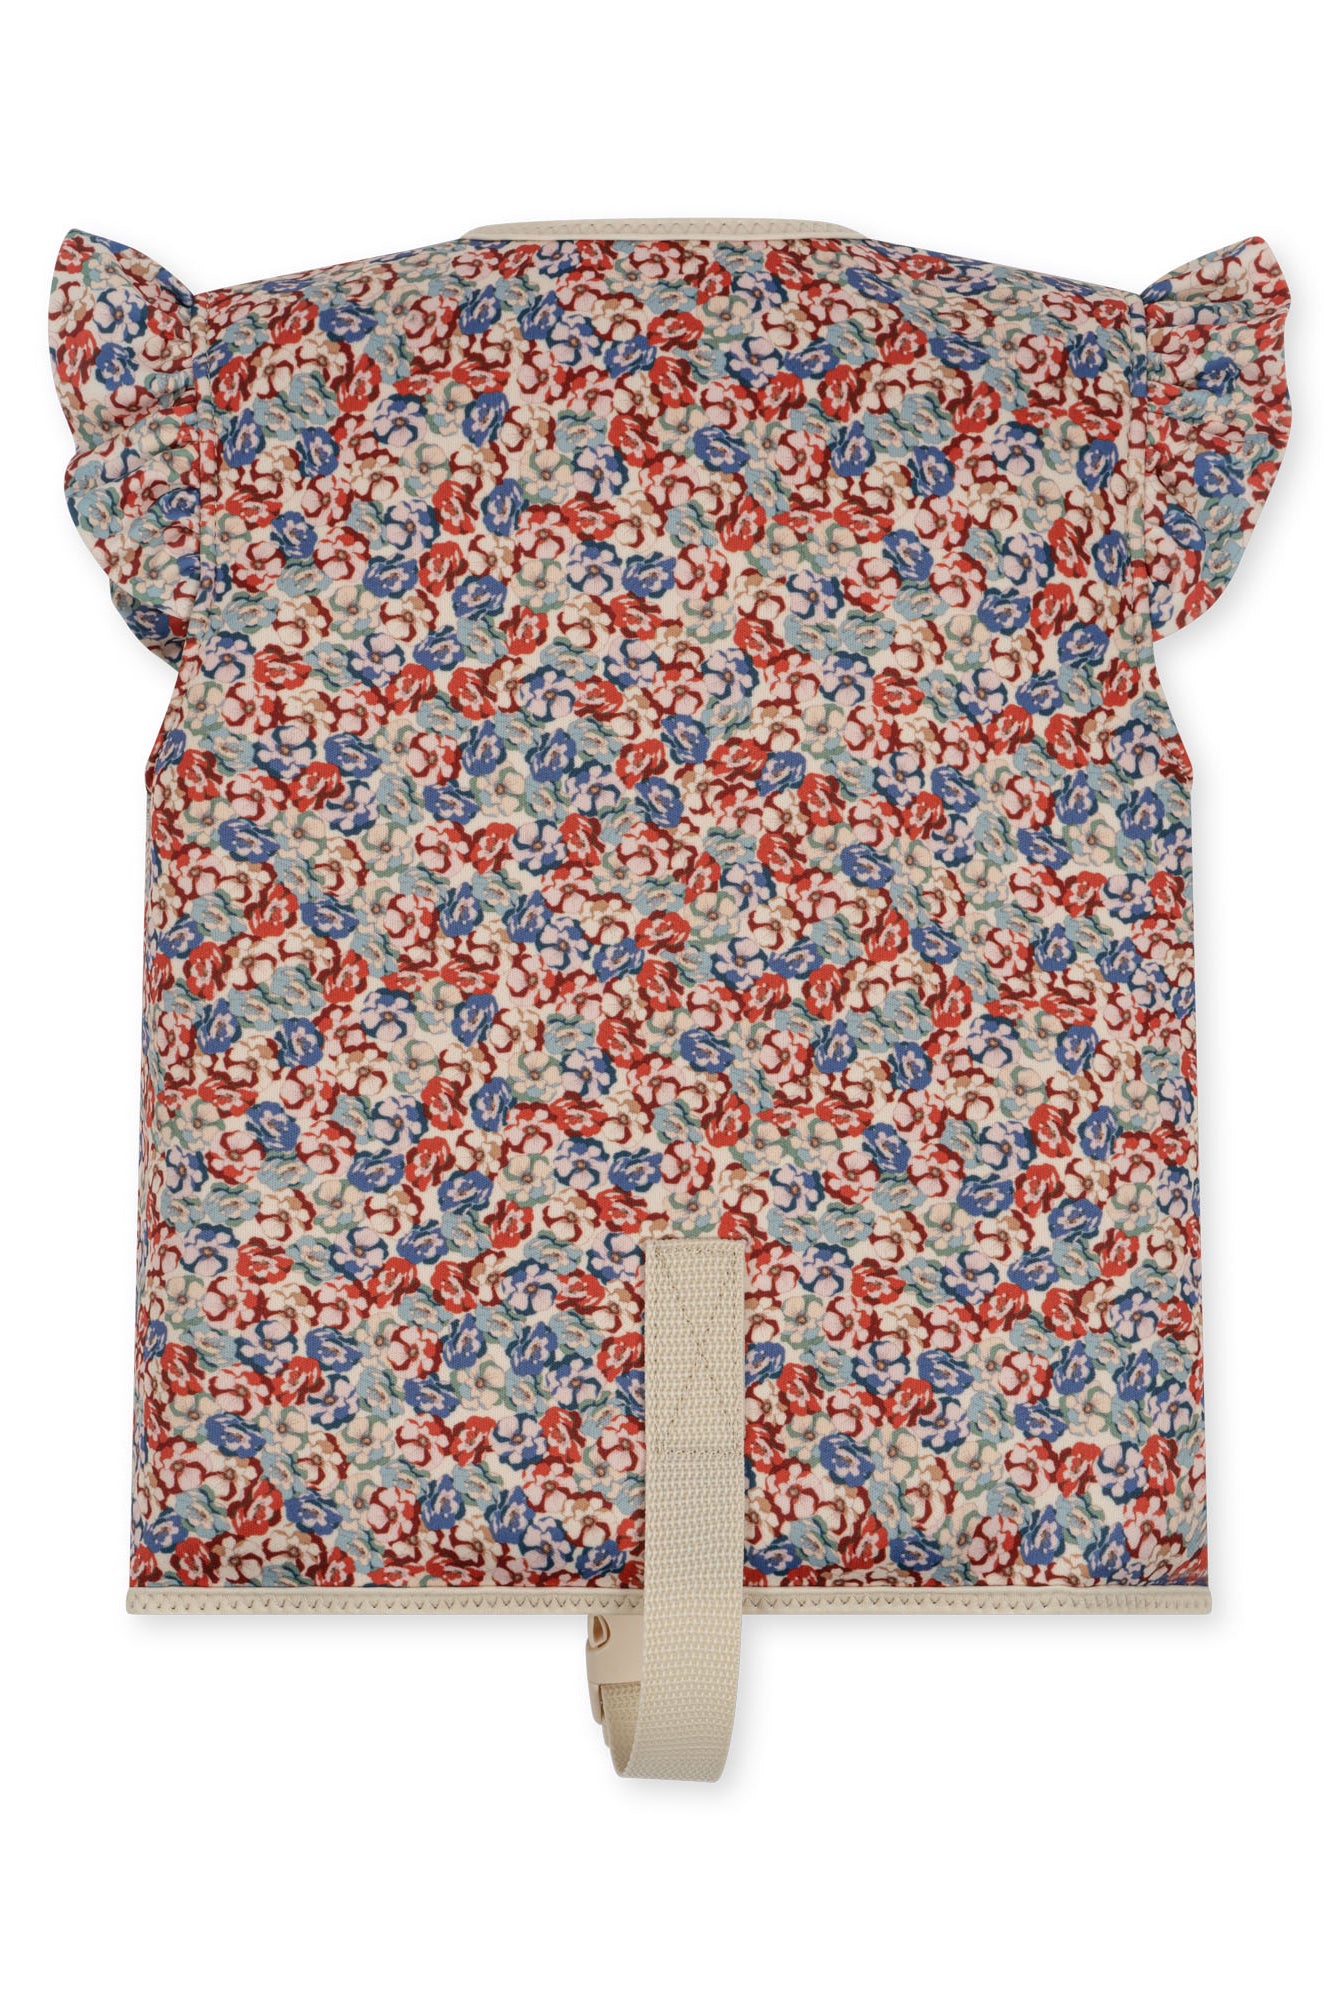 Toddler girls floral swim vest